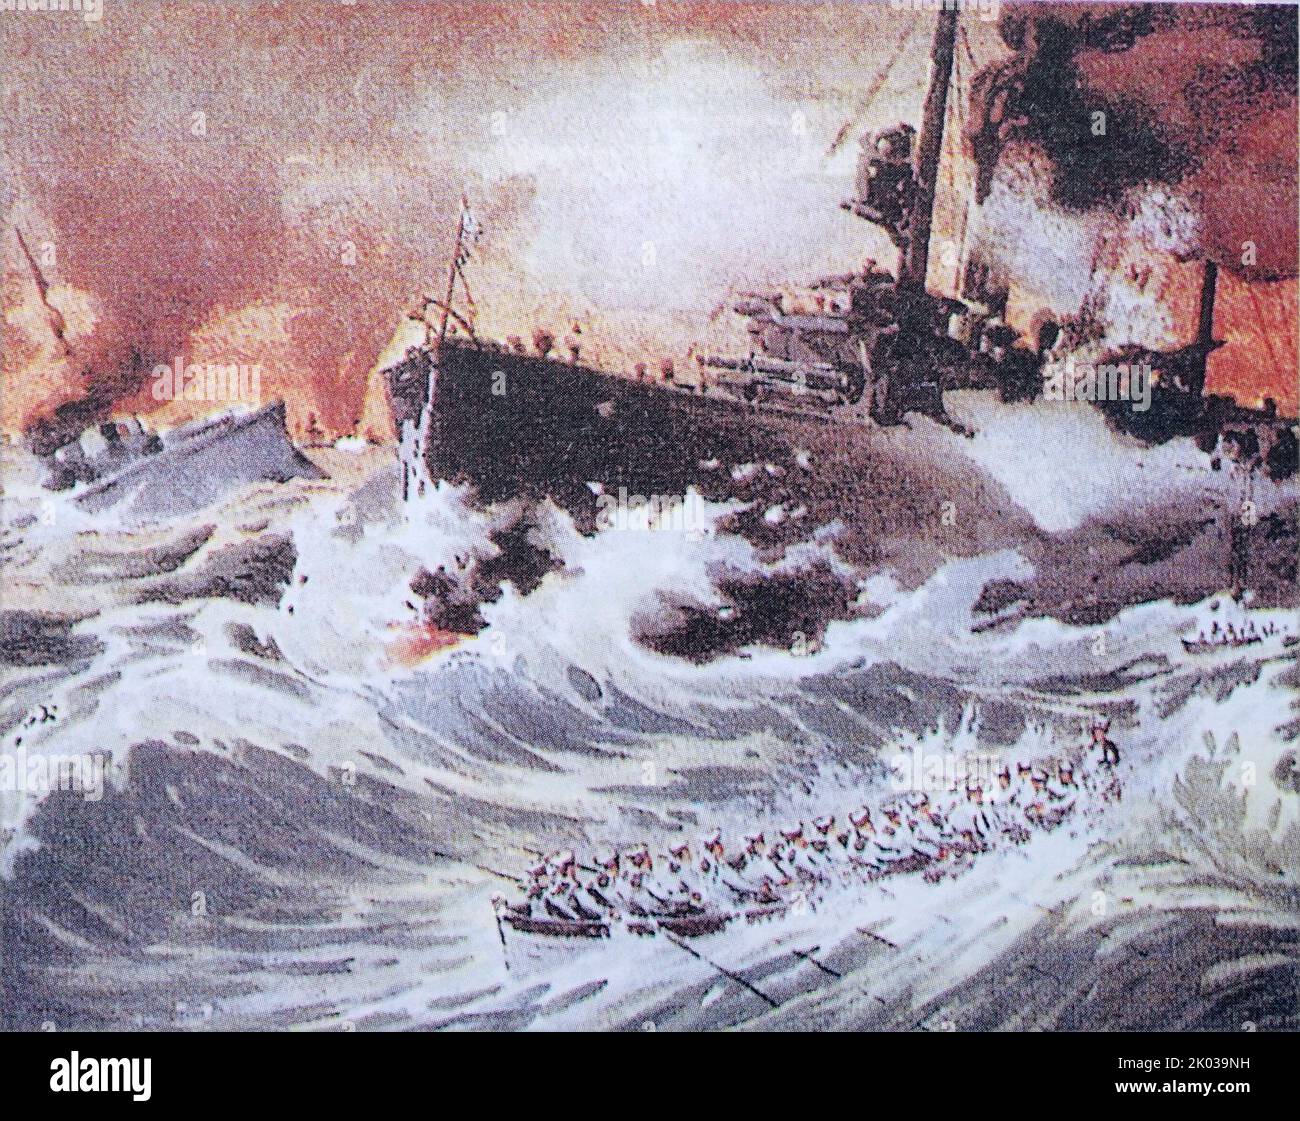 Die Schlacht von Tsushima war eine große Seeschlacht, die zwischen Russland und Japan während des russisch-japanischen Krieges ausgetragen wurde. Es wurde am 27-28. Mai 1905 (14-15. Mai im Julianischen Kalender, der damals in Russland im Einsatz war) in der Straße von Tsushima zwischen Korea und Südjapan gekämpft. Stockfoto